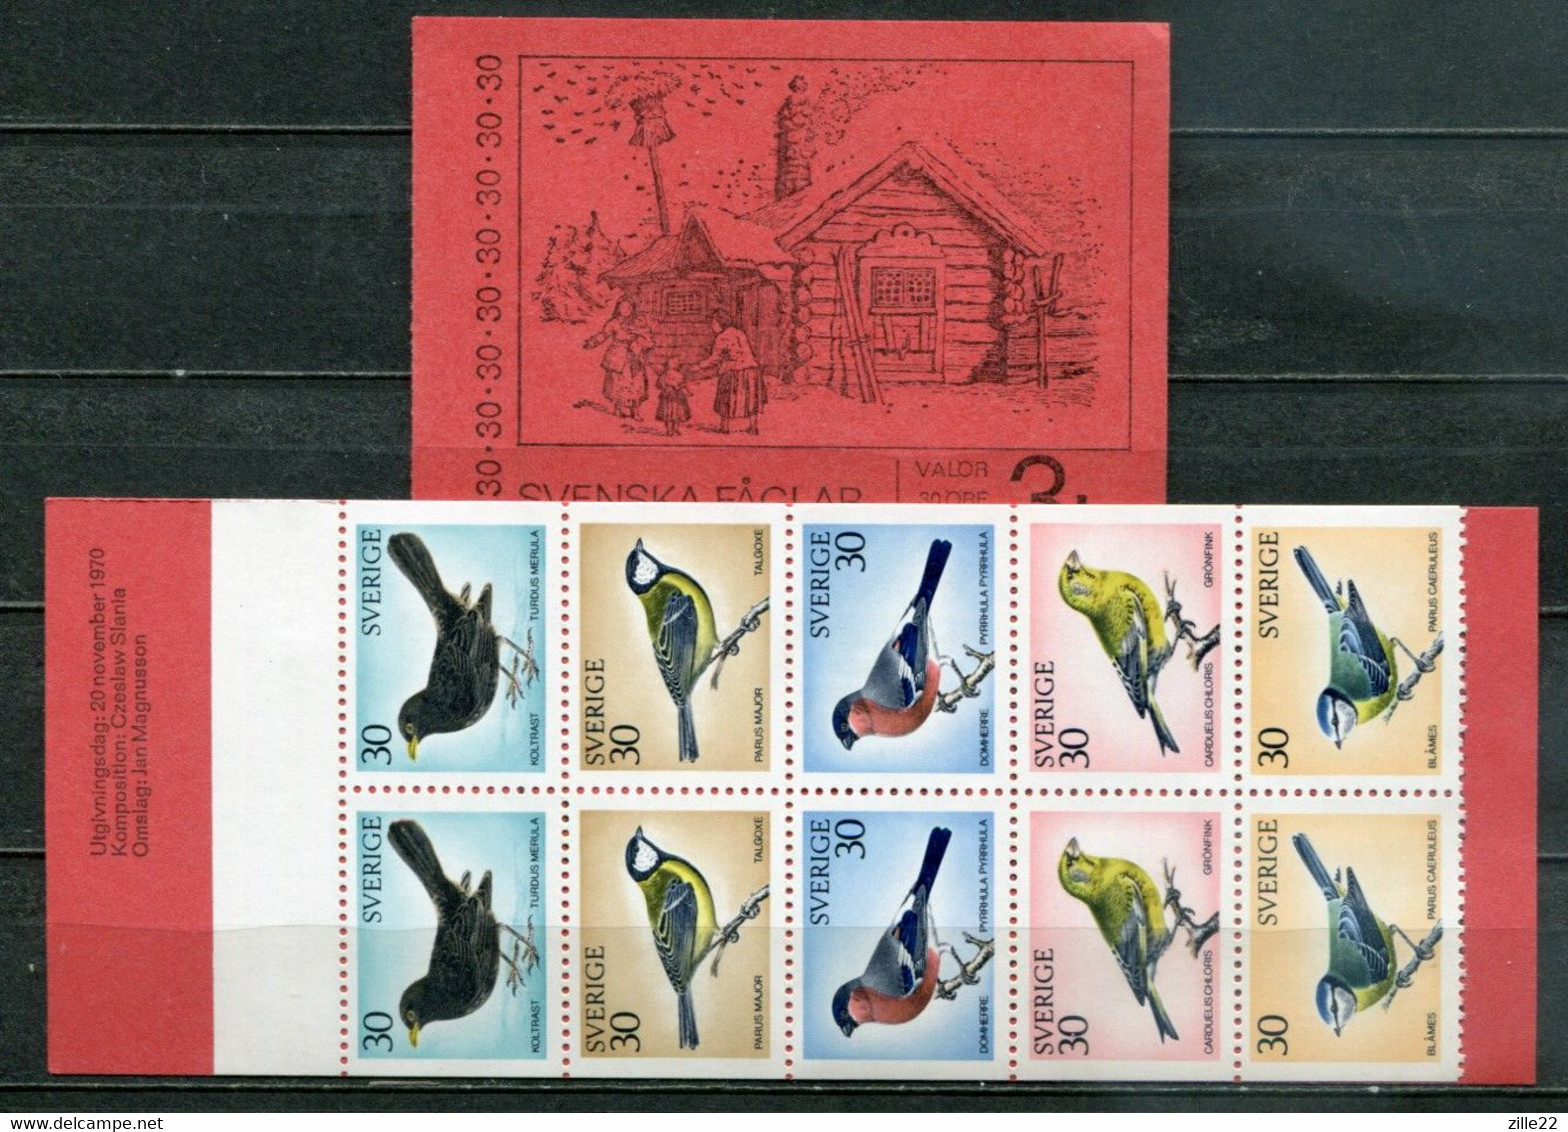 Schweden Sweden Sverige Mi# 692-6 Stamp Booklet  Postfrisch/MNH - Fauna Birds - Unused Stamps